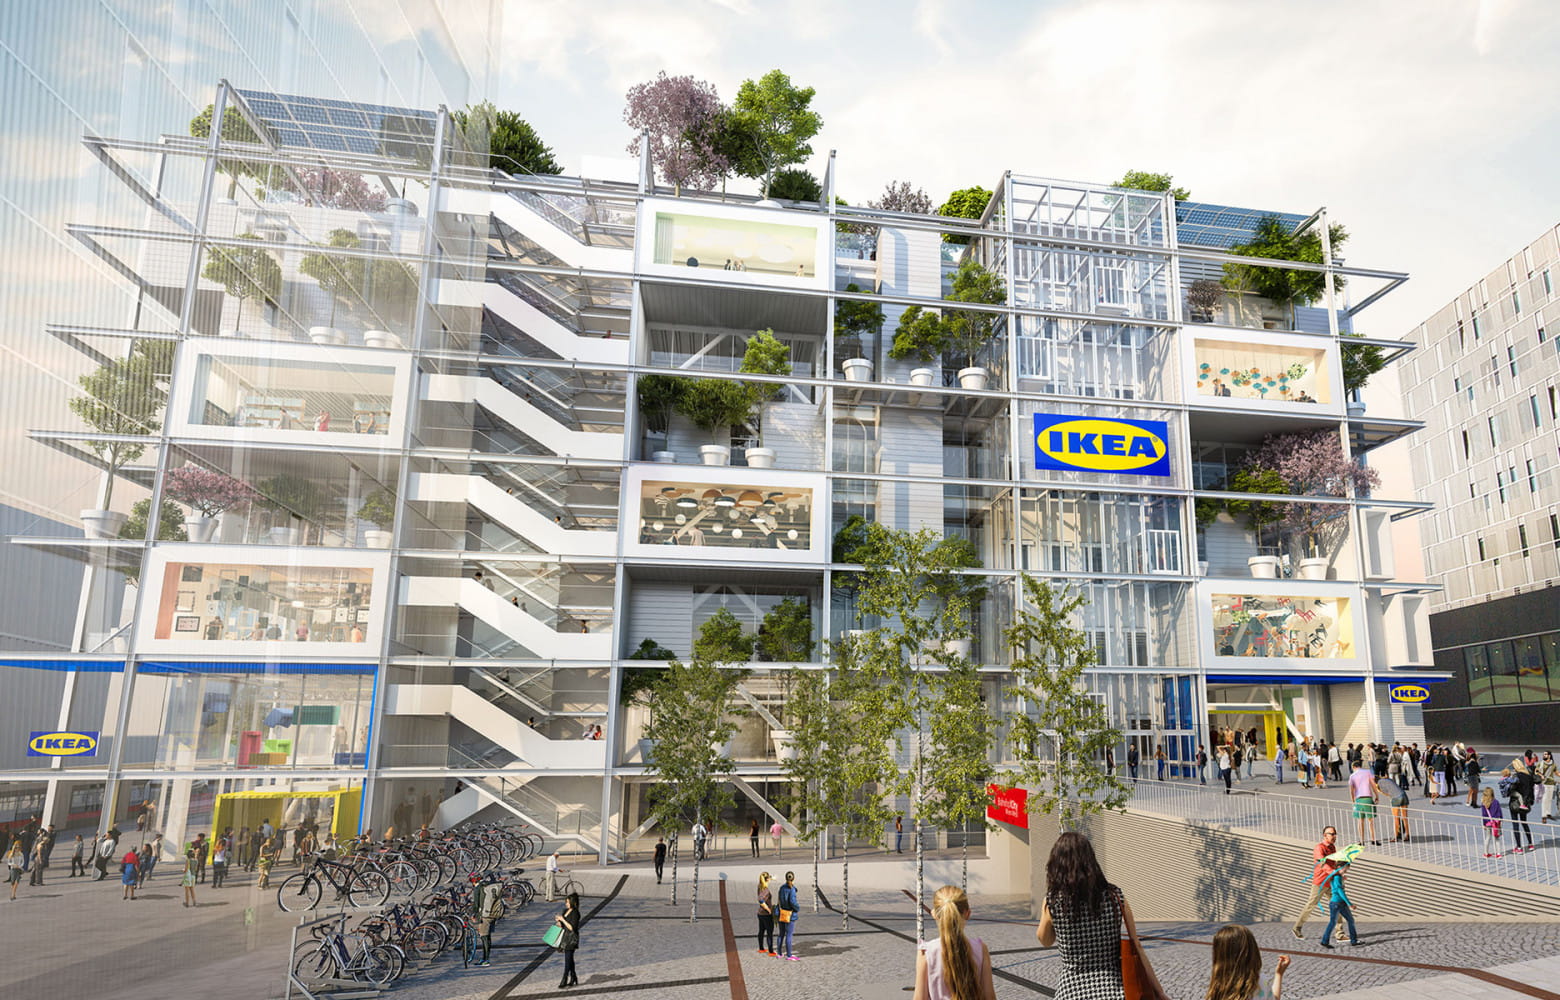 Ikea ne mise plus seulement sur les grands espaces en banlieue. Aujourd’hui, l’enseigne suédoise s’installe dans les...